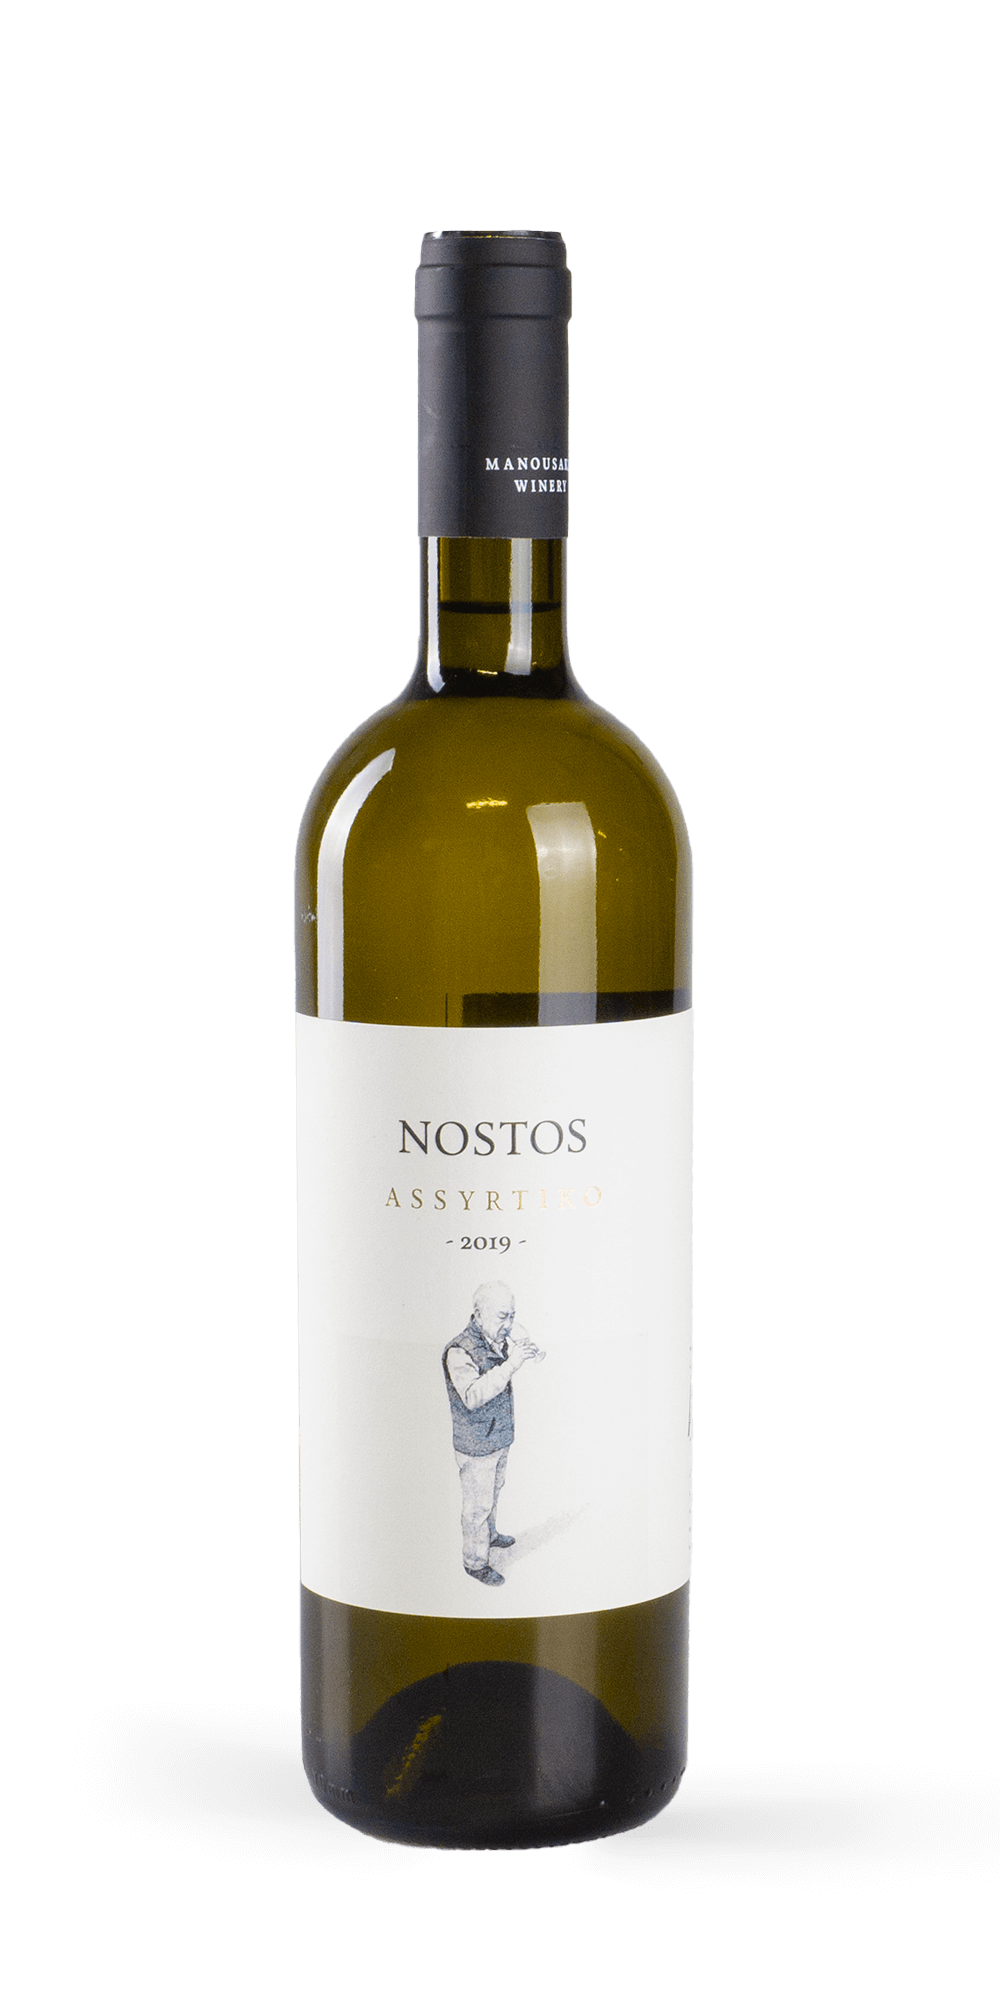 Nostos Assyrtiko 2019 - Manousakis Winery